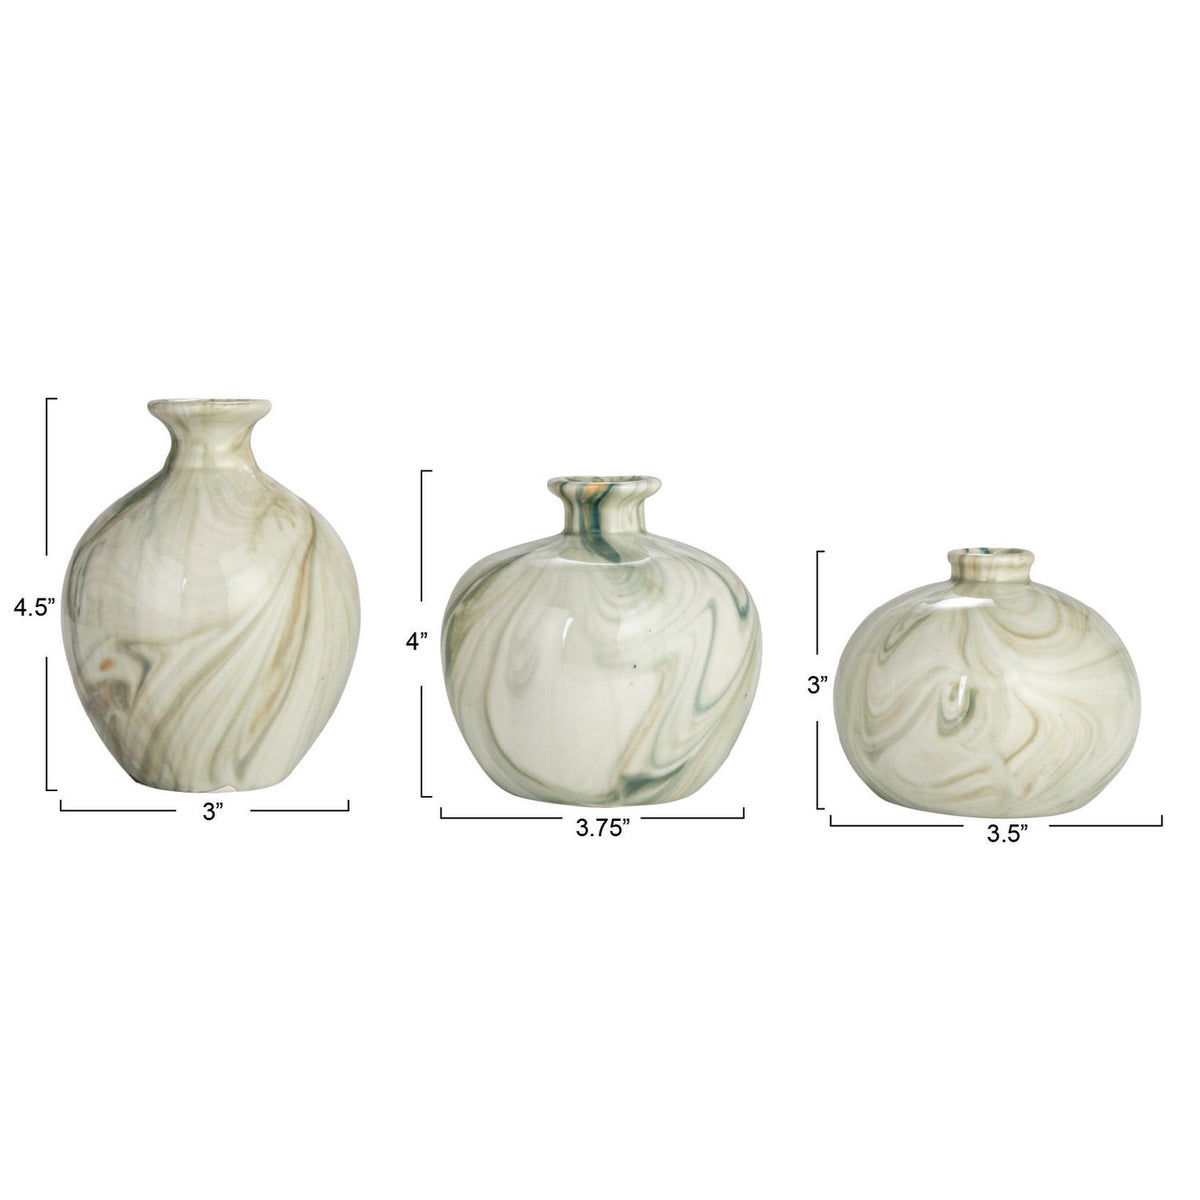 Round Stoneware Vase w/Marbled Design, Green